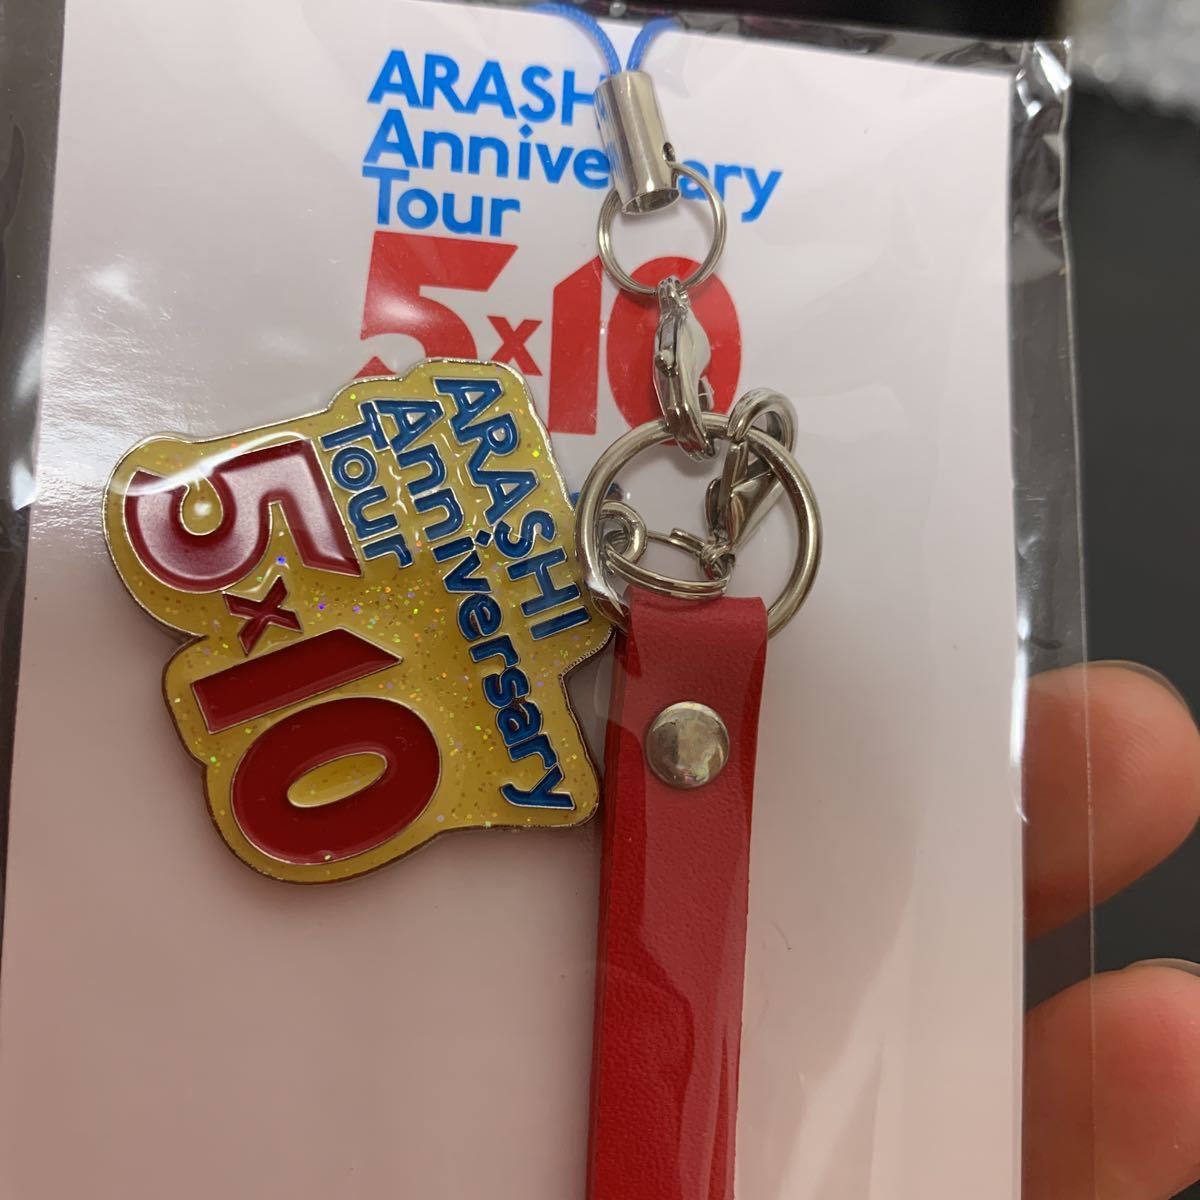 嵐 ARASHI Anniversary Tour 5×10 会場限定チャーム付きストラップ